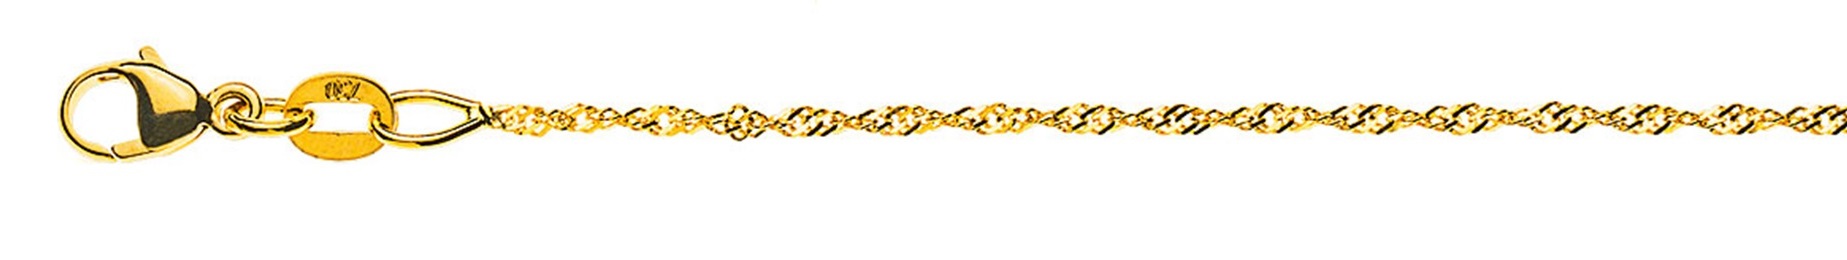 AURONOS Prestige Necklace Yellow Gold 18K Singapore Chain 55cm 1.2mm